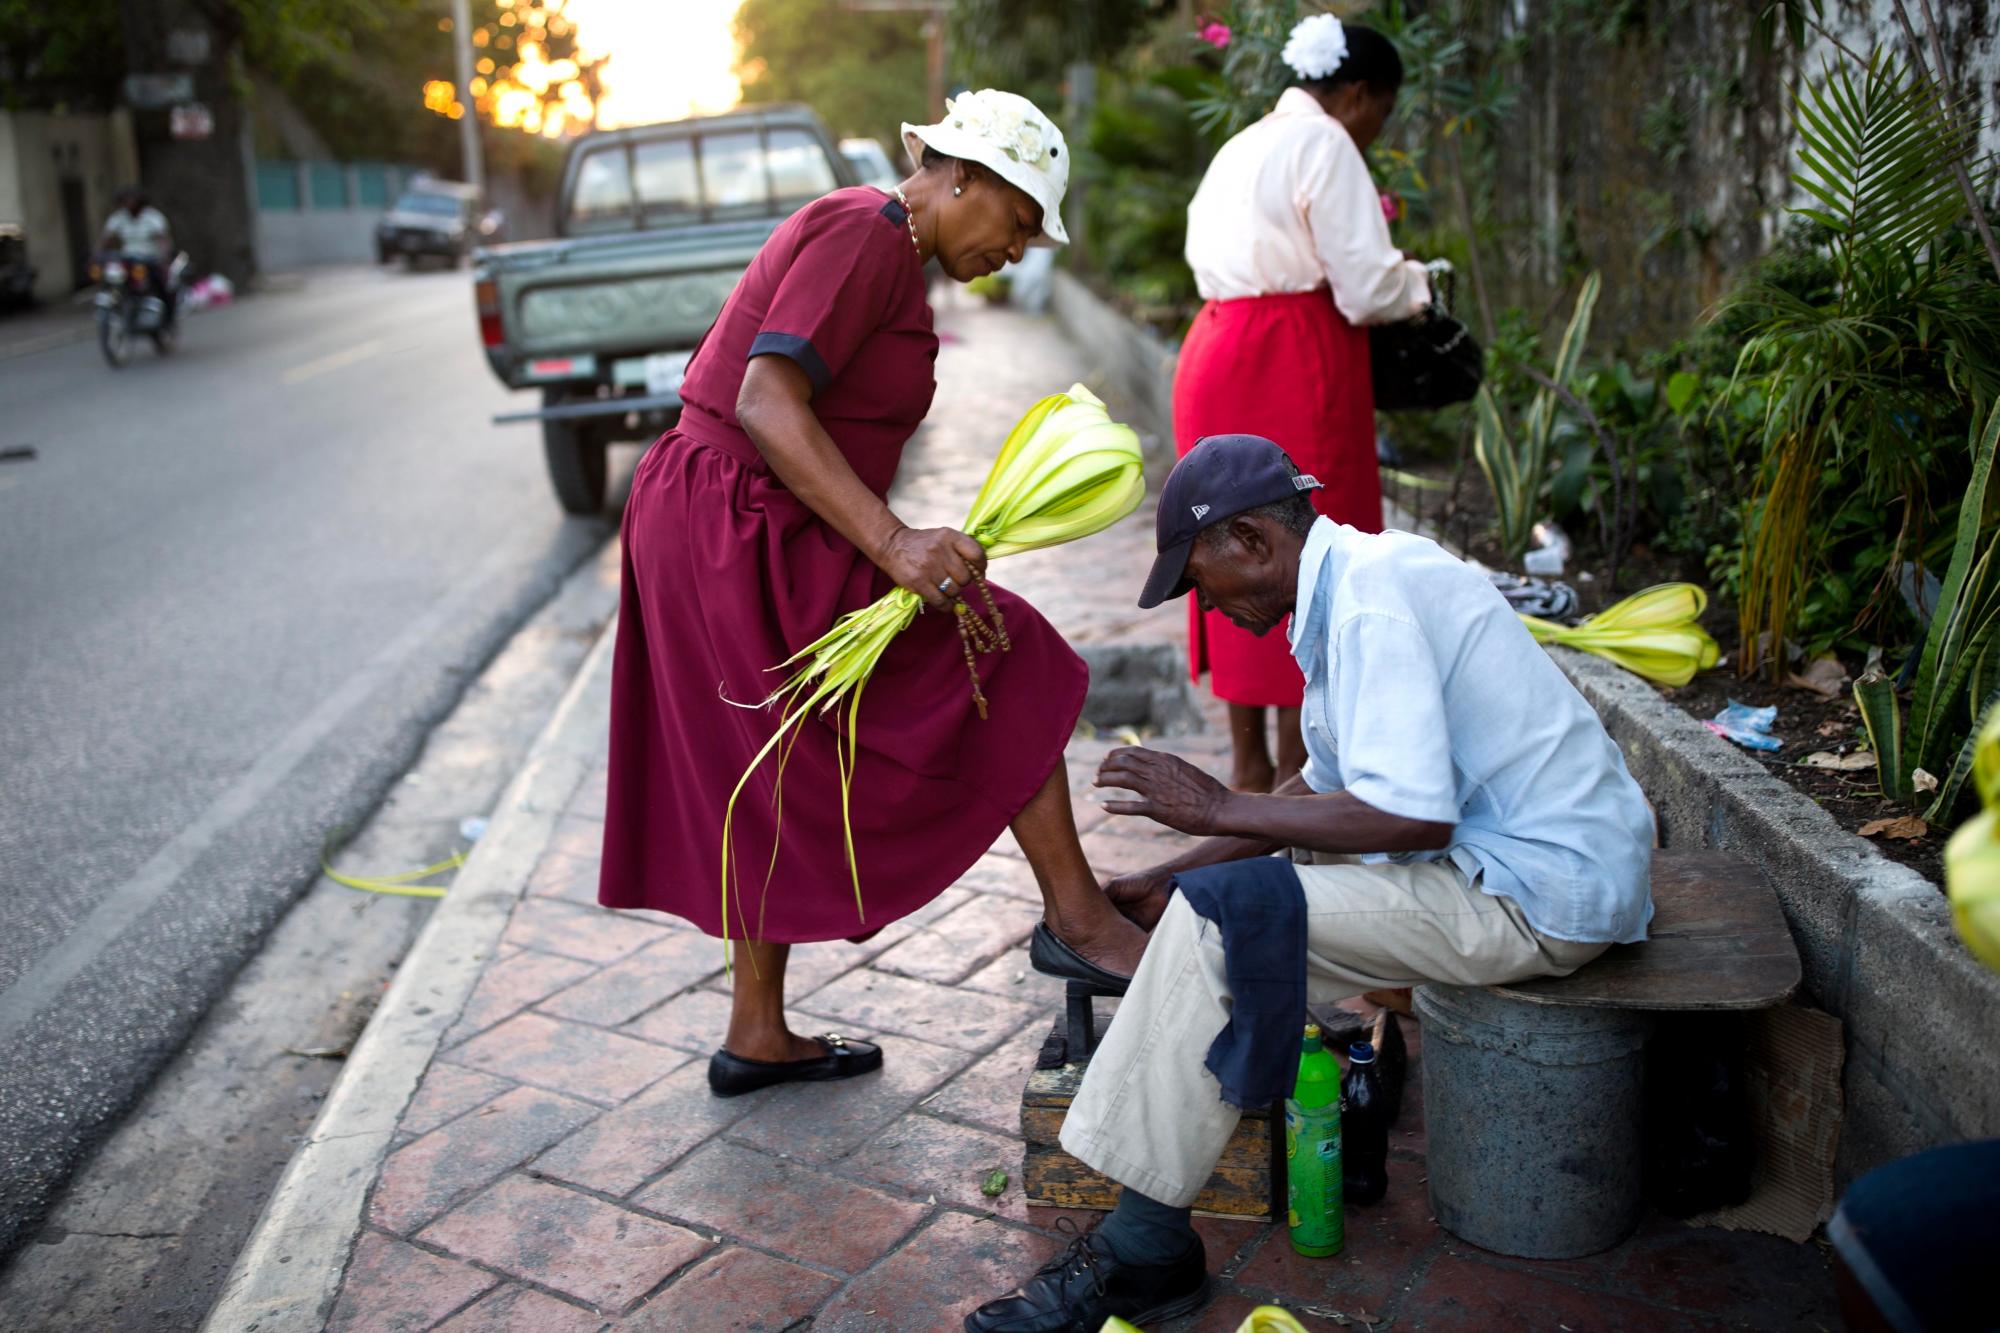 Una mujer brilla sus zapatos antes de asistir A la Misa del Domingo de Ramos en Petion-Ville, Haití. El Domingo de Ramos marca la entrada de Jesucristo en Jerusalén, cuando sus seguidores pusieron ramas de palma en su camino, antes de su crucifixión.